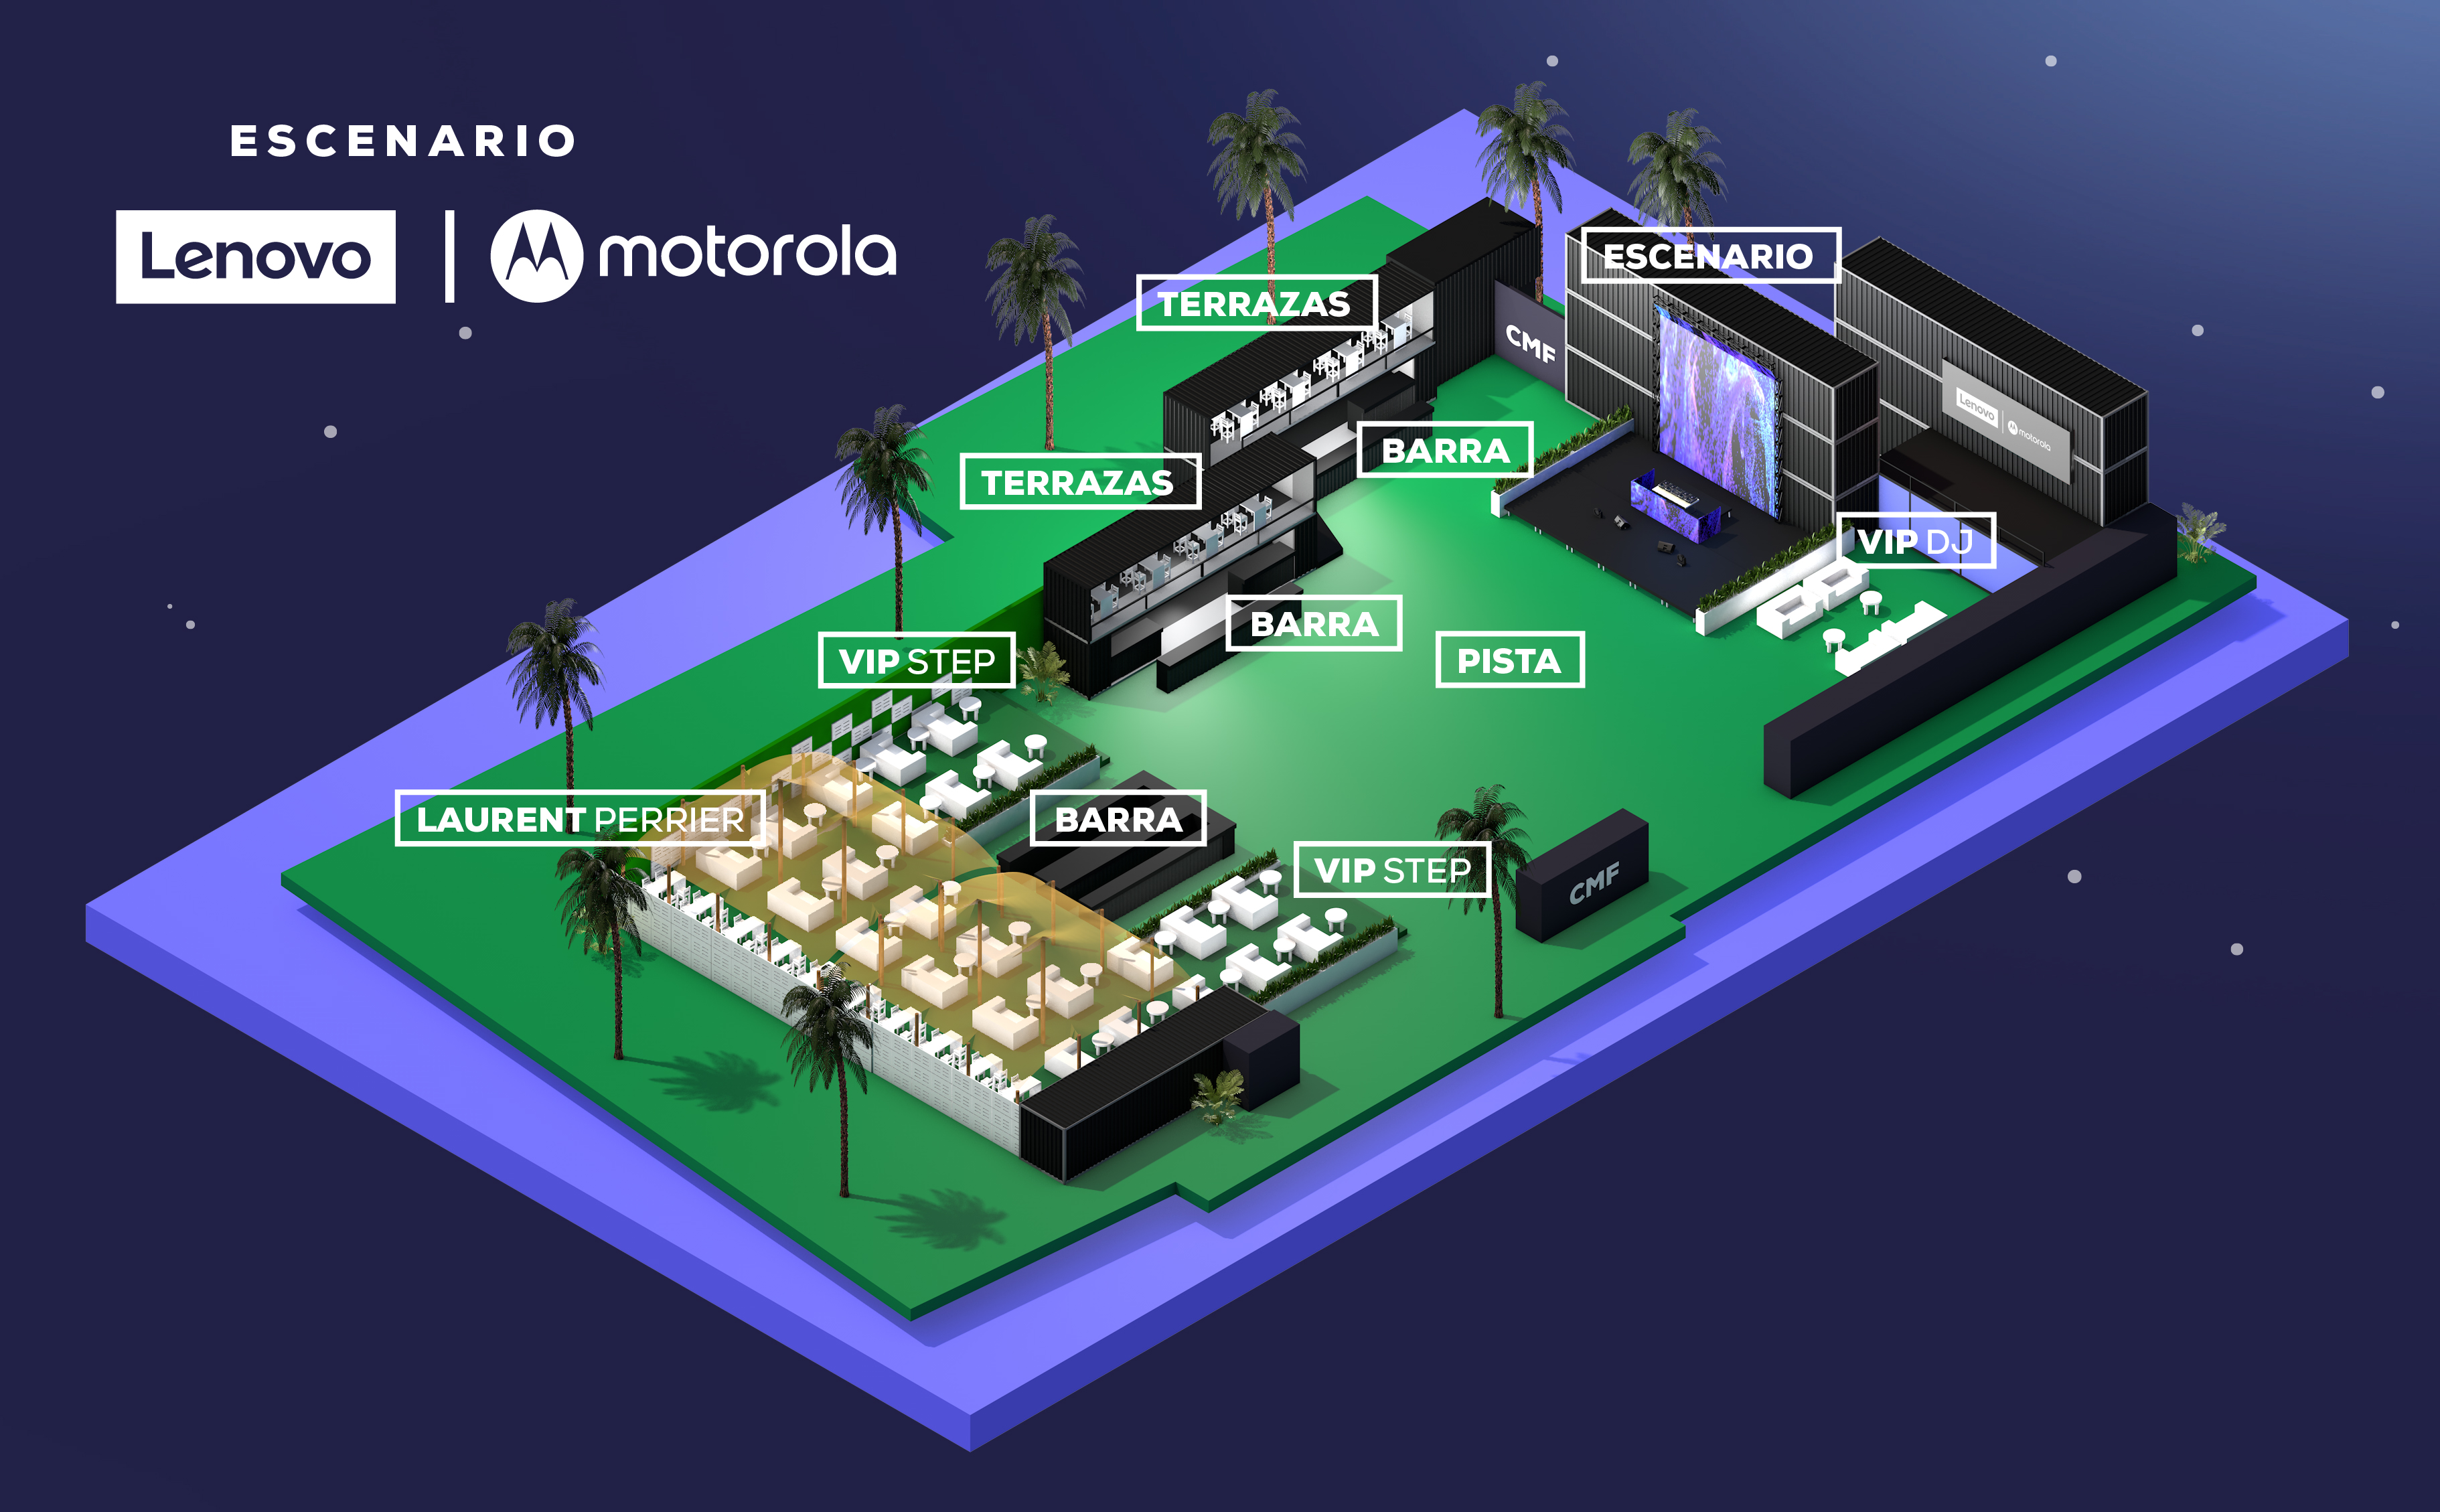 Imagen de plano de la organización: Escenario Lenovo/Motorola